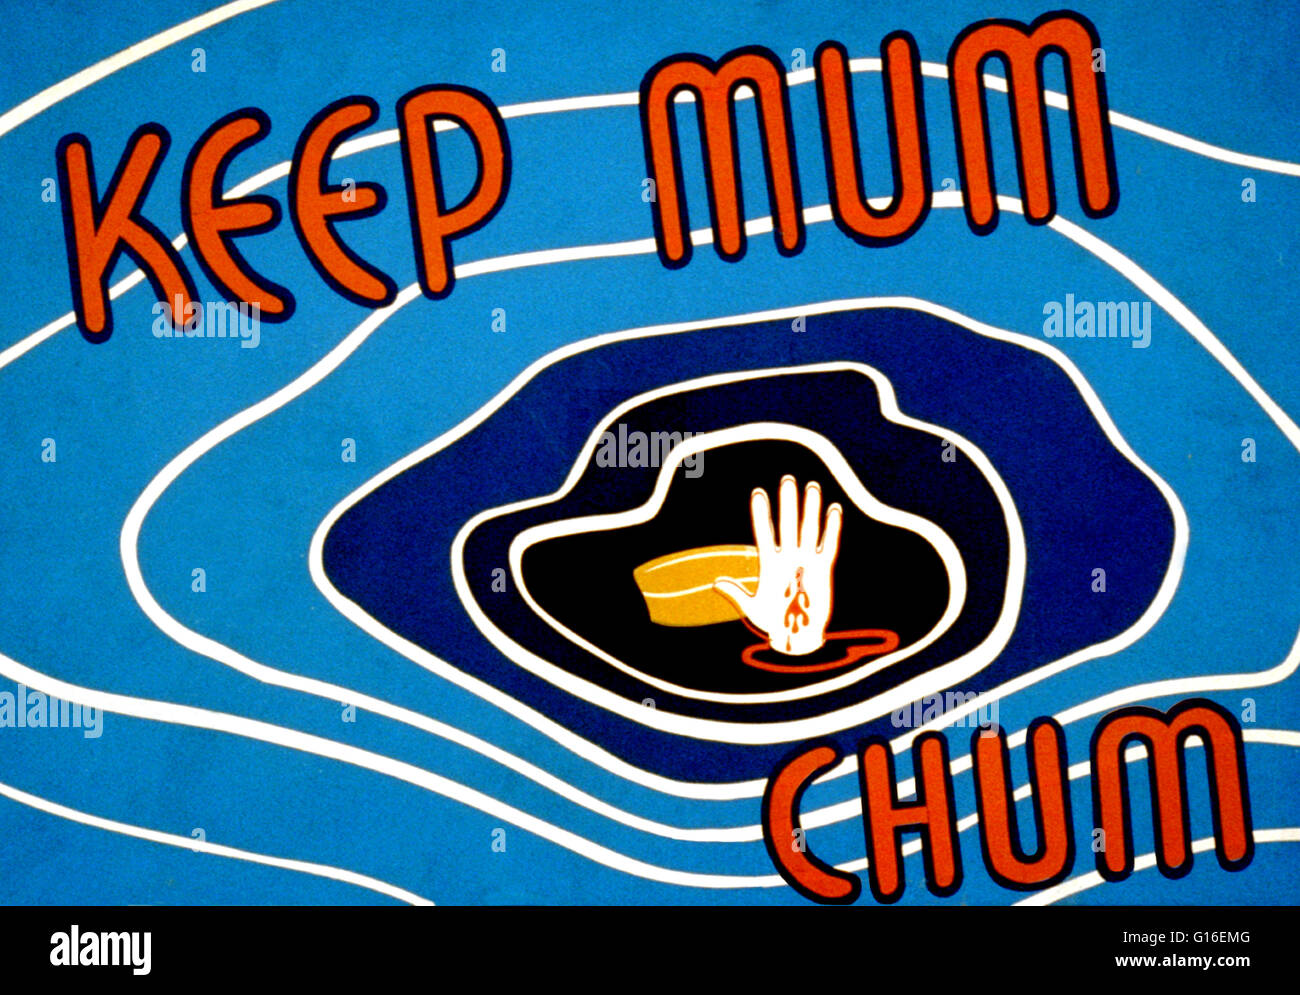 Titulado: "Mantenga mum chum". Cartel sugiriendo descuidados comunicación  puede ser perjudicial para el esfuerzo de guerra, mostrando un ejército pac  y una parte se hunde en el agua. El Federal Art Project (